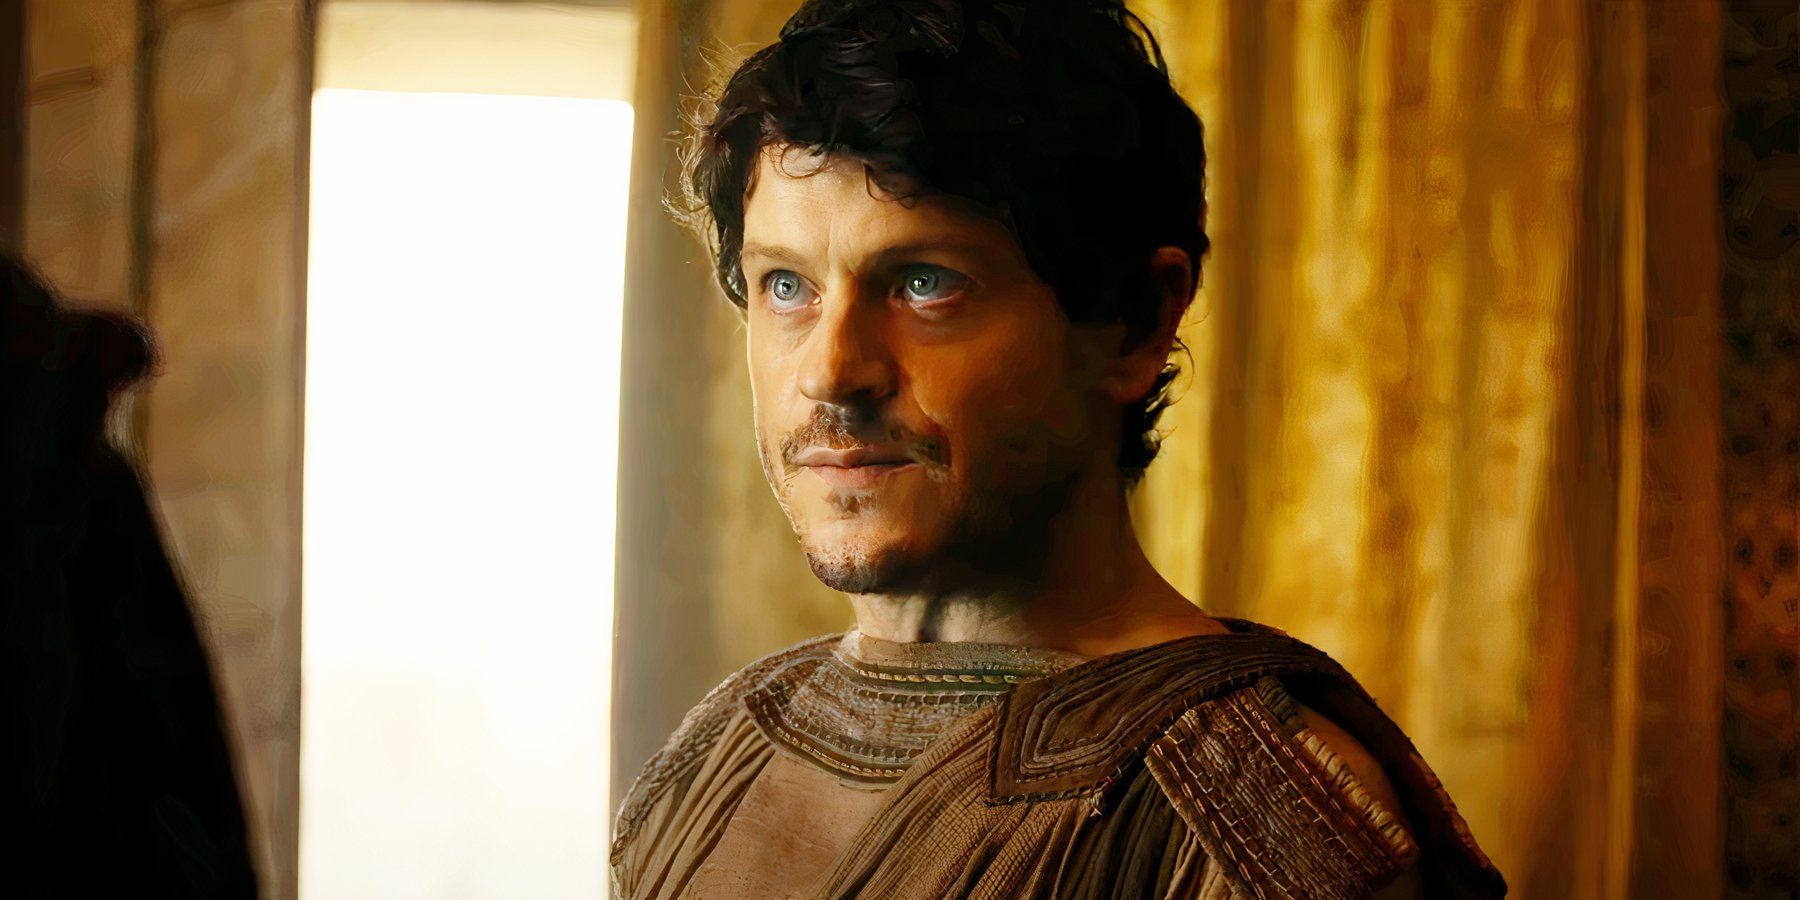 La serie dramática sobre la antigua Roma se convierte en un éxito en streaming a pesar de su puntuación del 50% en Rotten Tomatoes